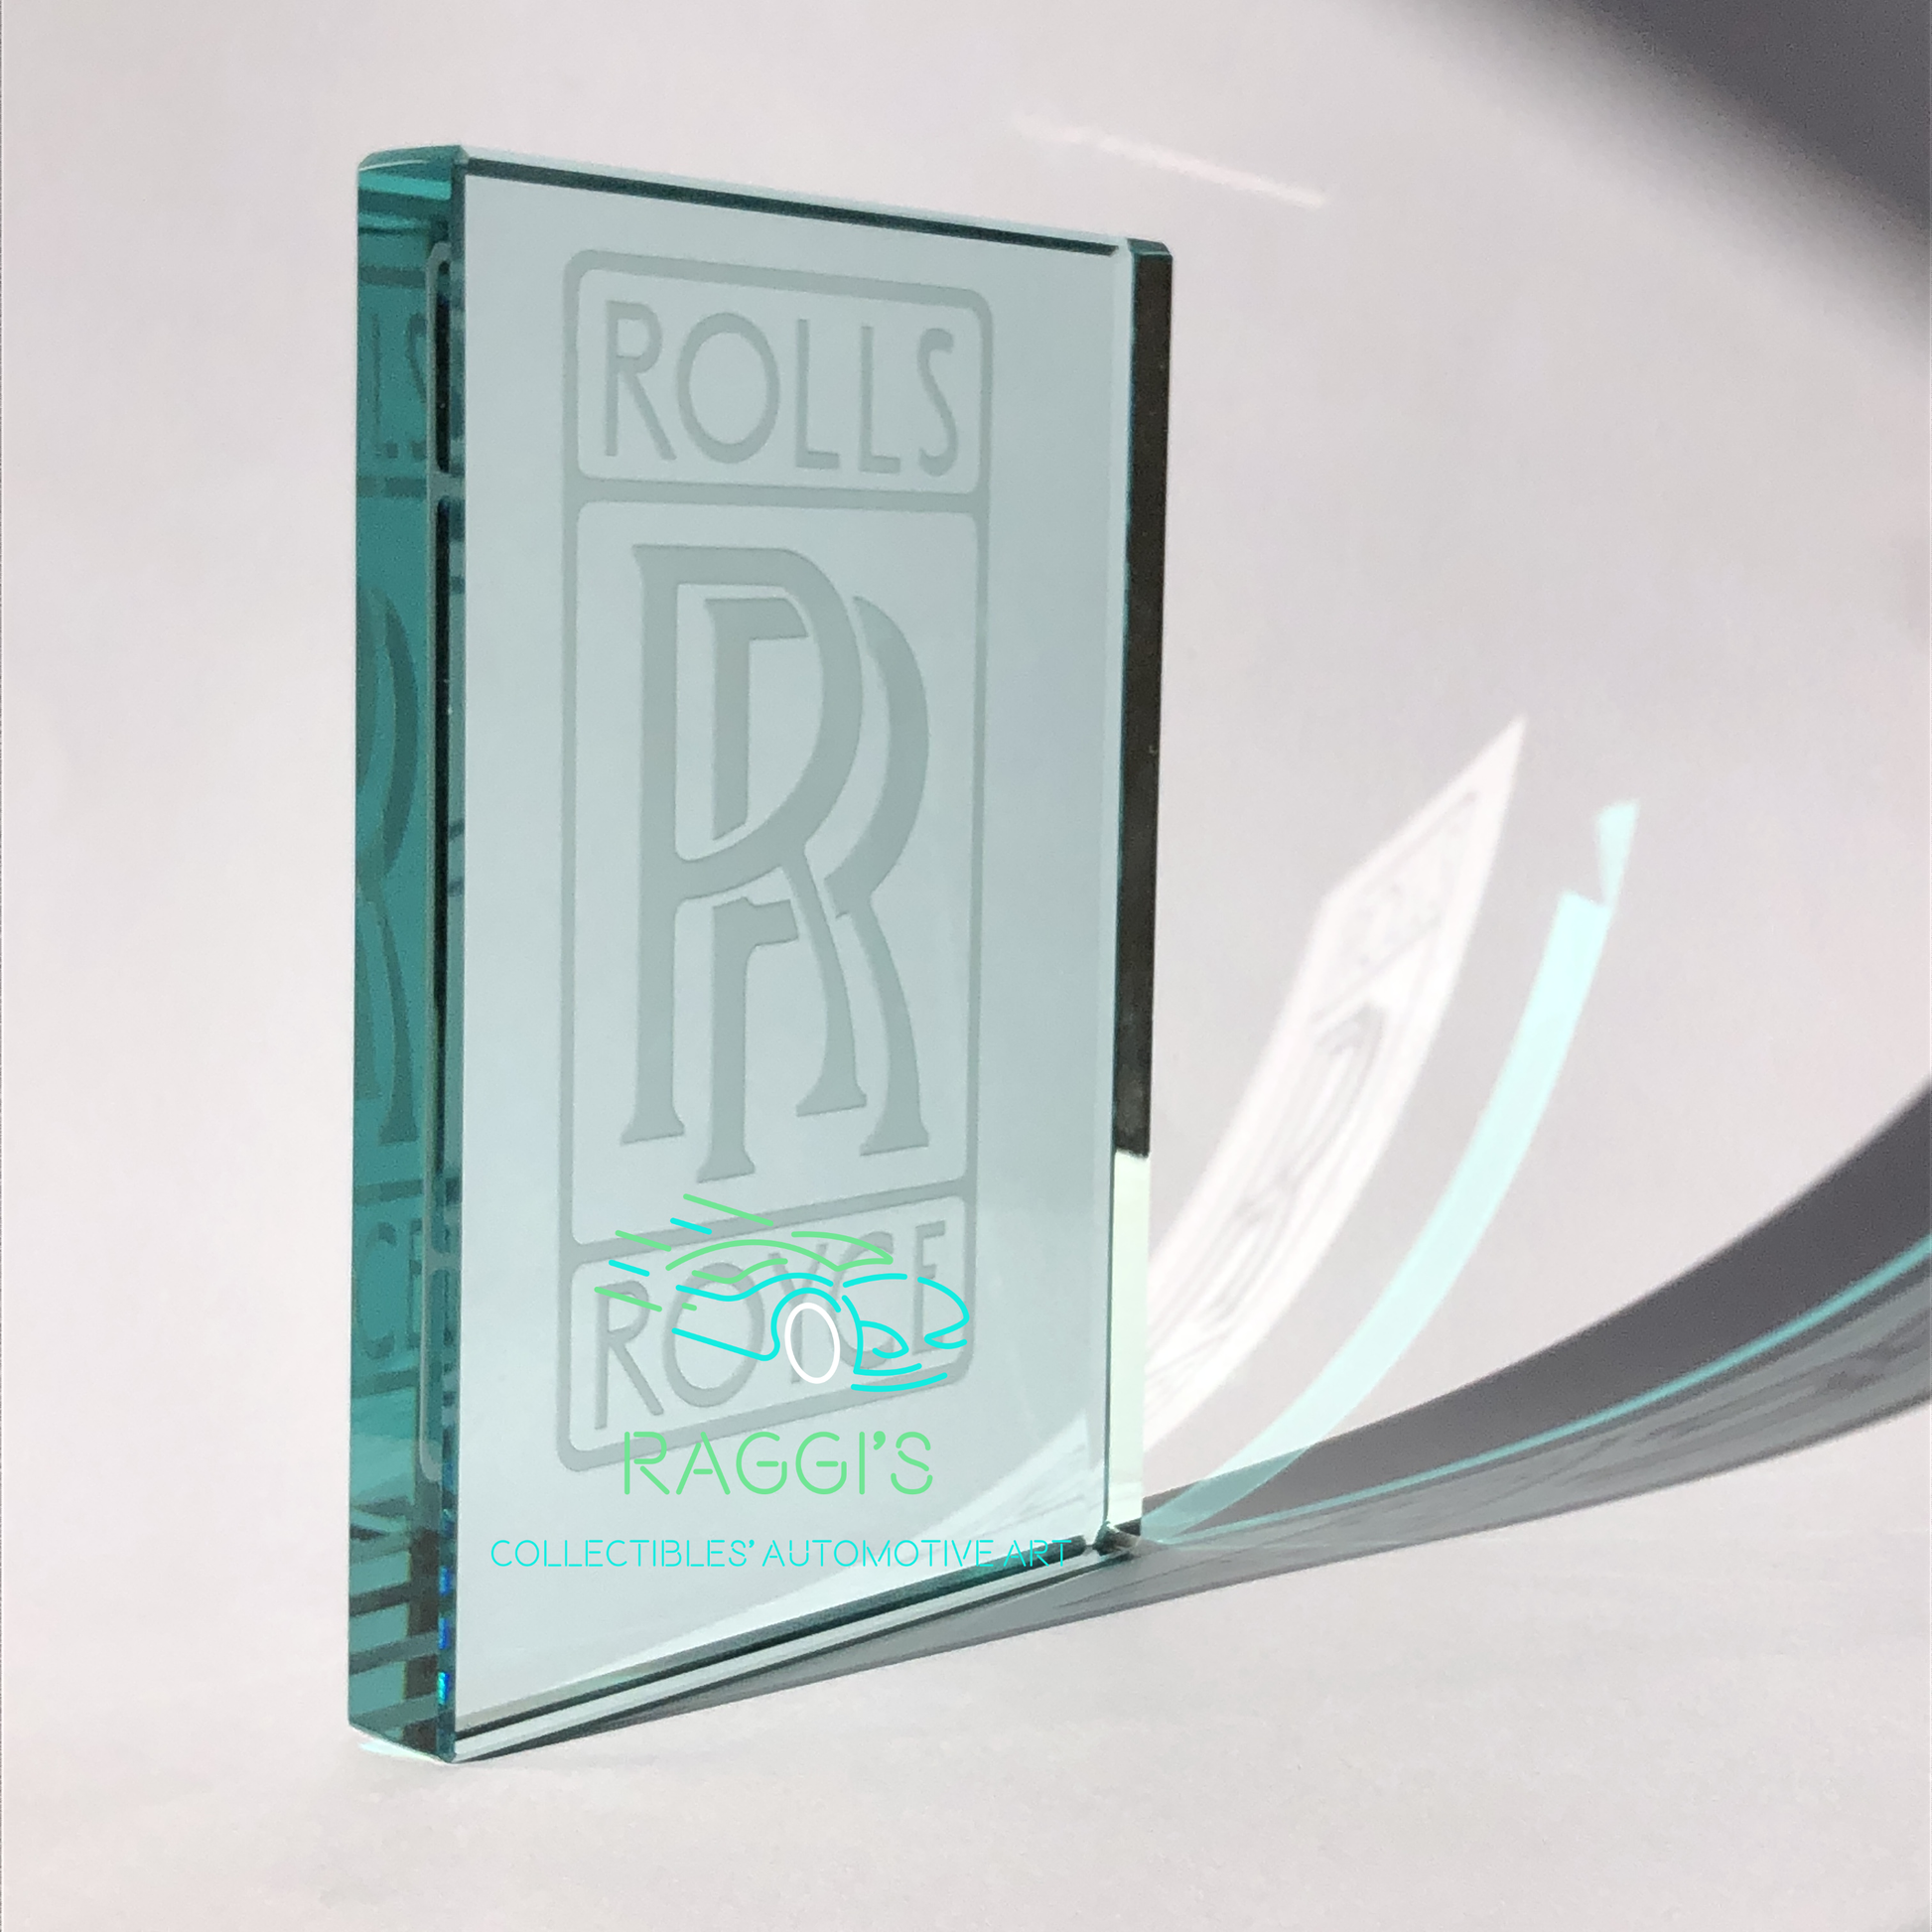 Rolls-Royce, Fermacarte in Vetro Cristallo con Stemma Rolls-Royce Inciso - Raggi's Collectibles' Automotive Art